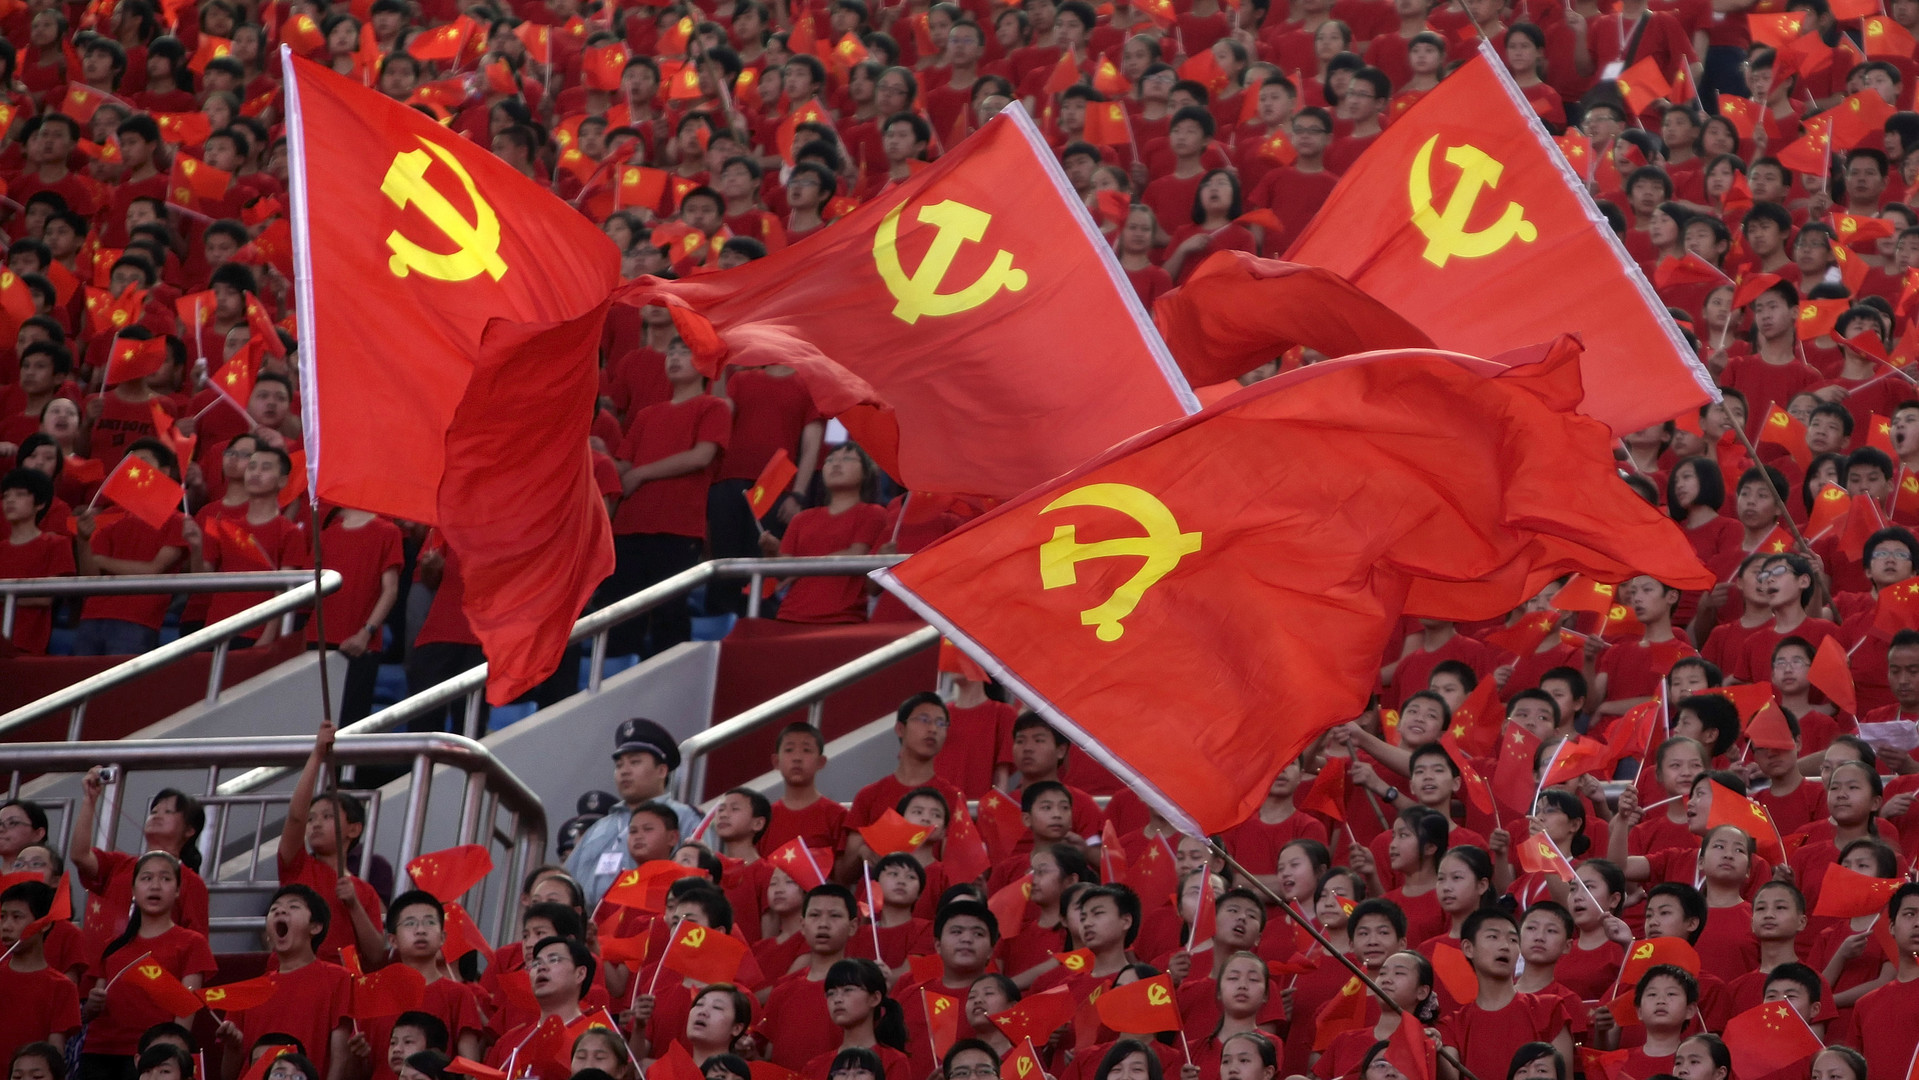 Ставка на красное: как Компартия Китая укрепляет своё влияние в мире и кто ей противостоит